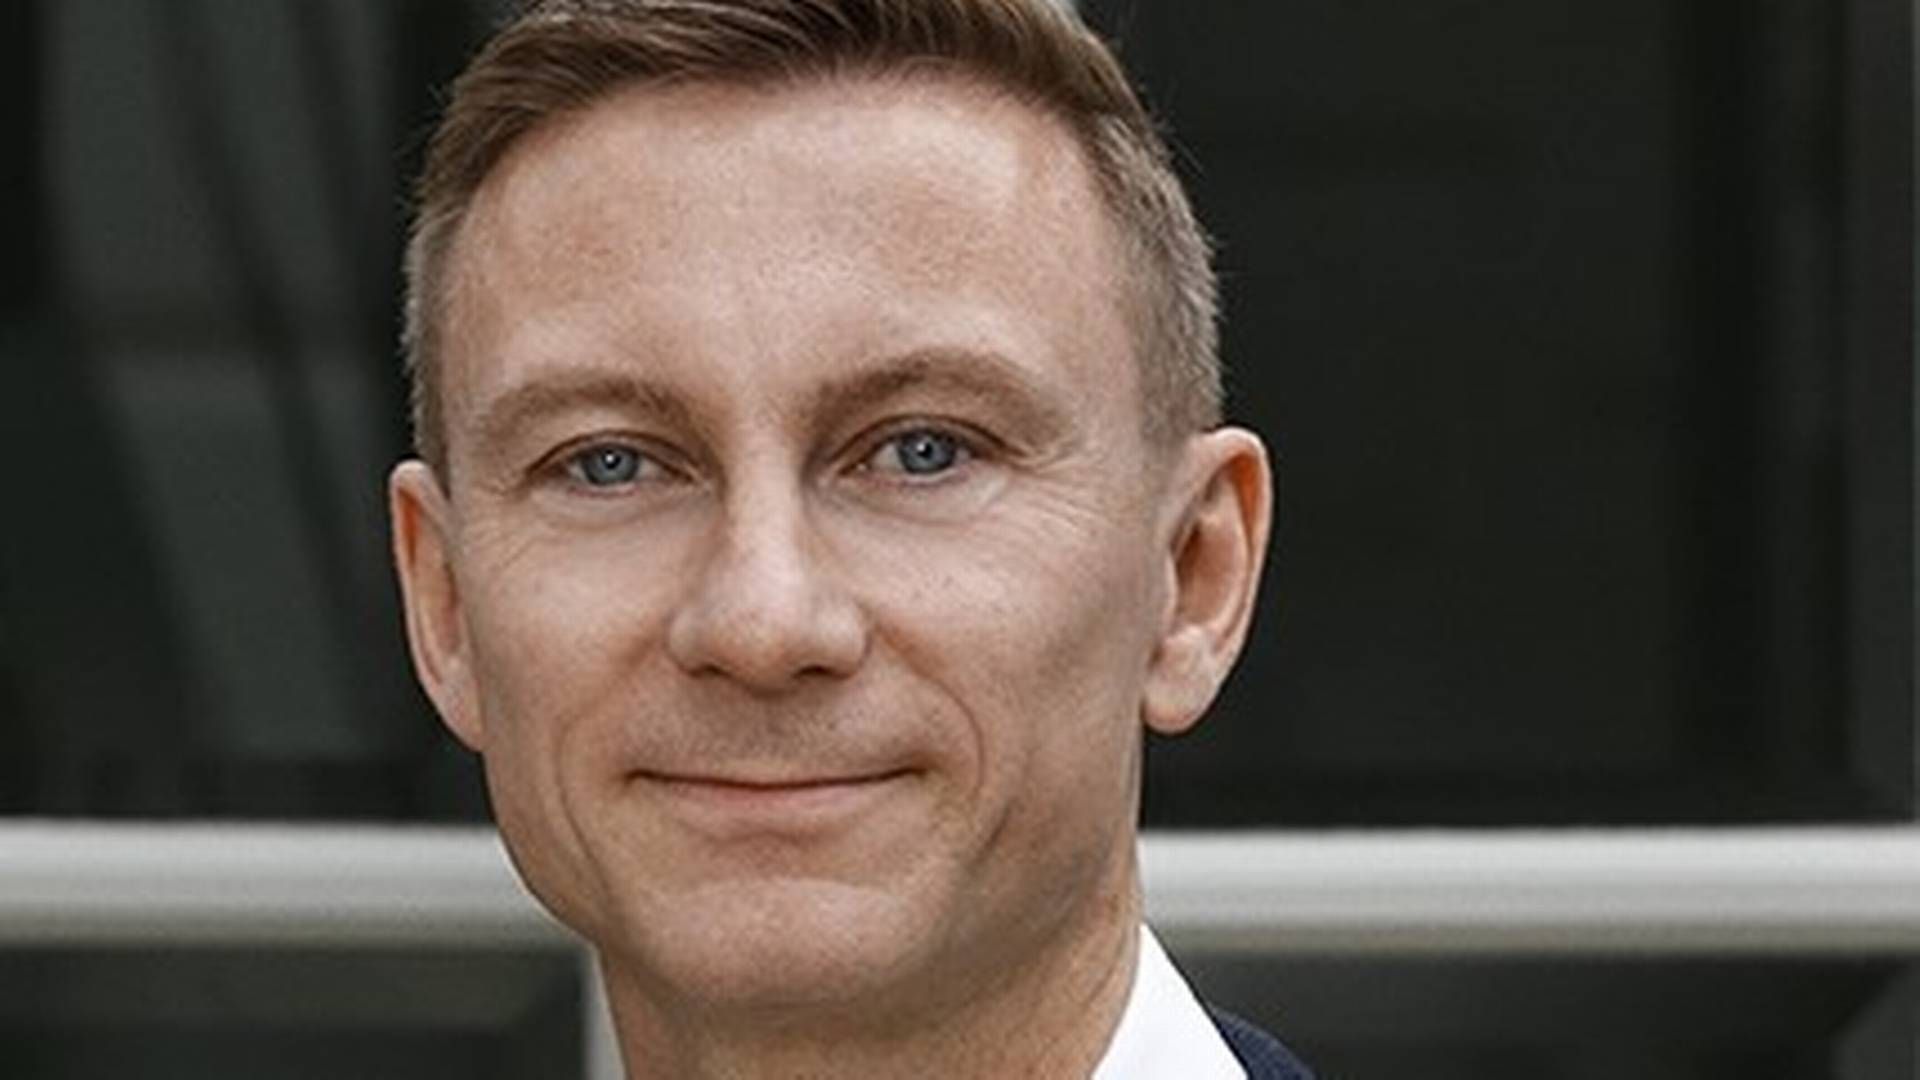 44-årige Peter Søgaard bliver efter knap 14 år i virksomheden nu adm. direktør for udviklerkoncernen Innovater: ”De tre nøgleord for mig er overblik, prioritering og eksekvering". | Foto: PR / Innovater